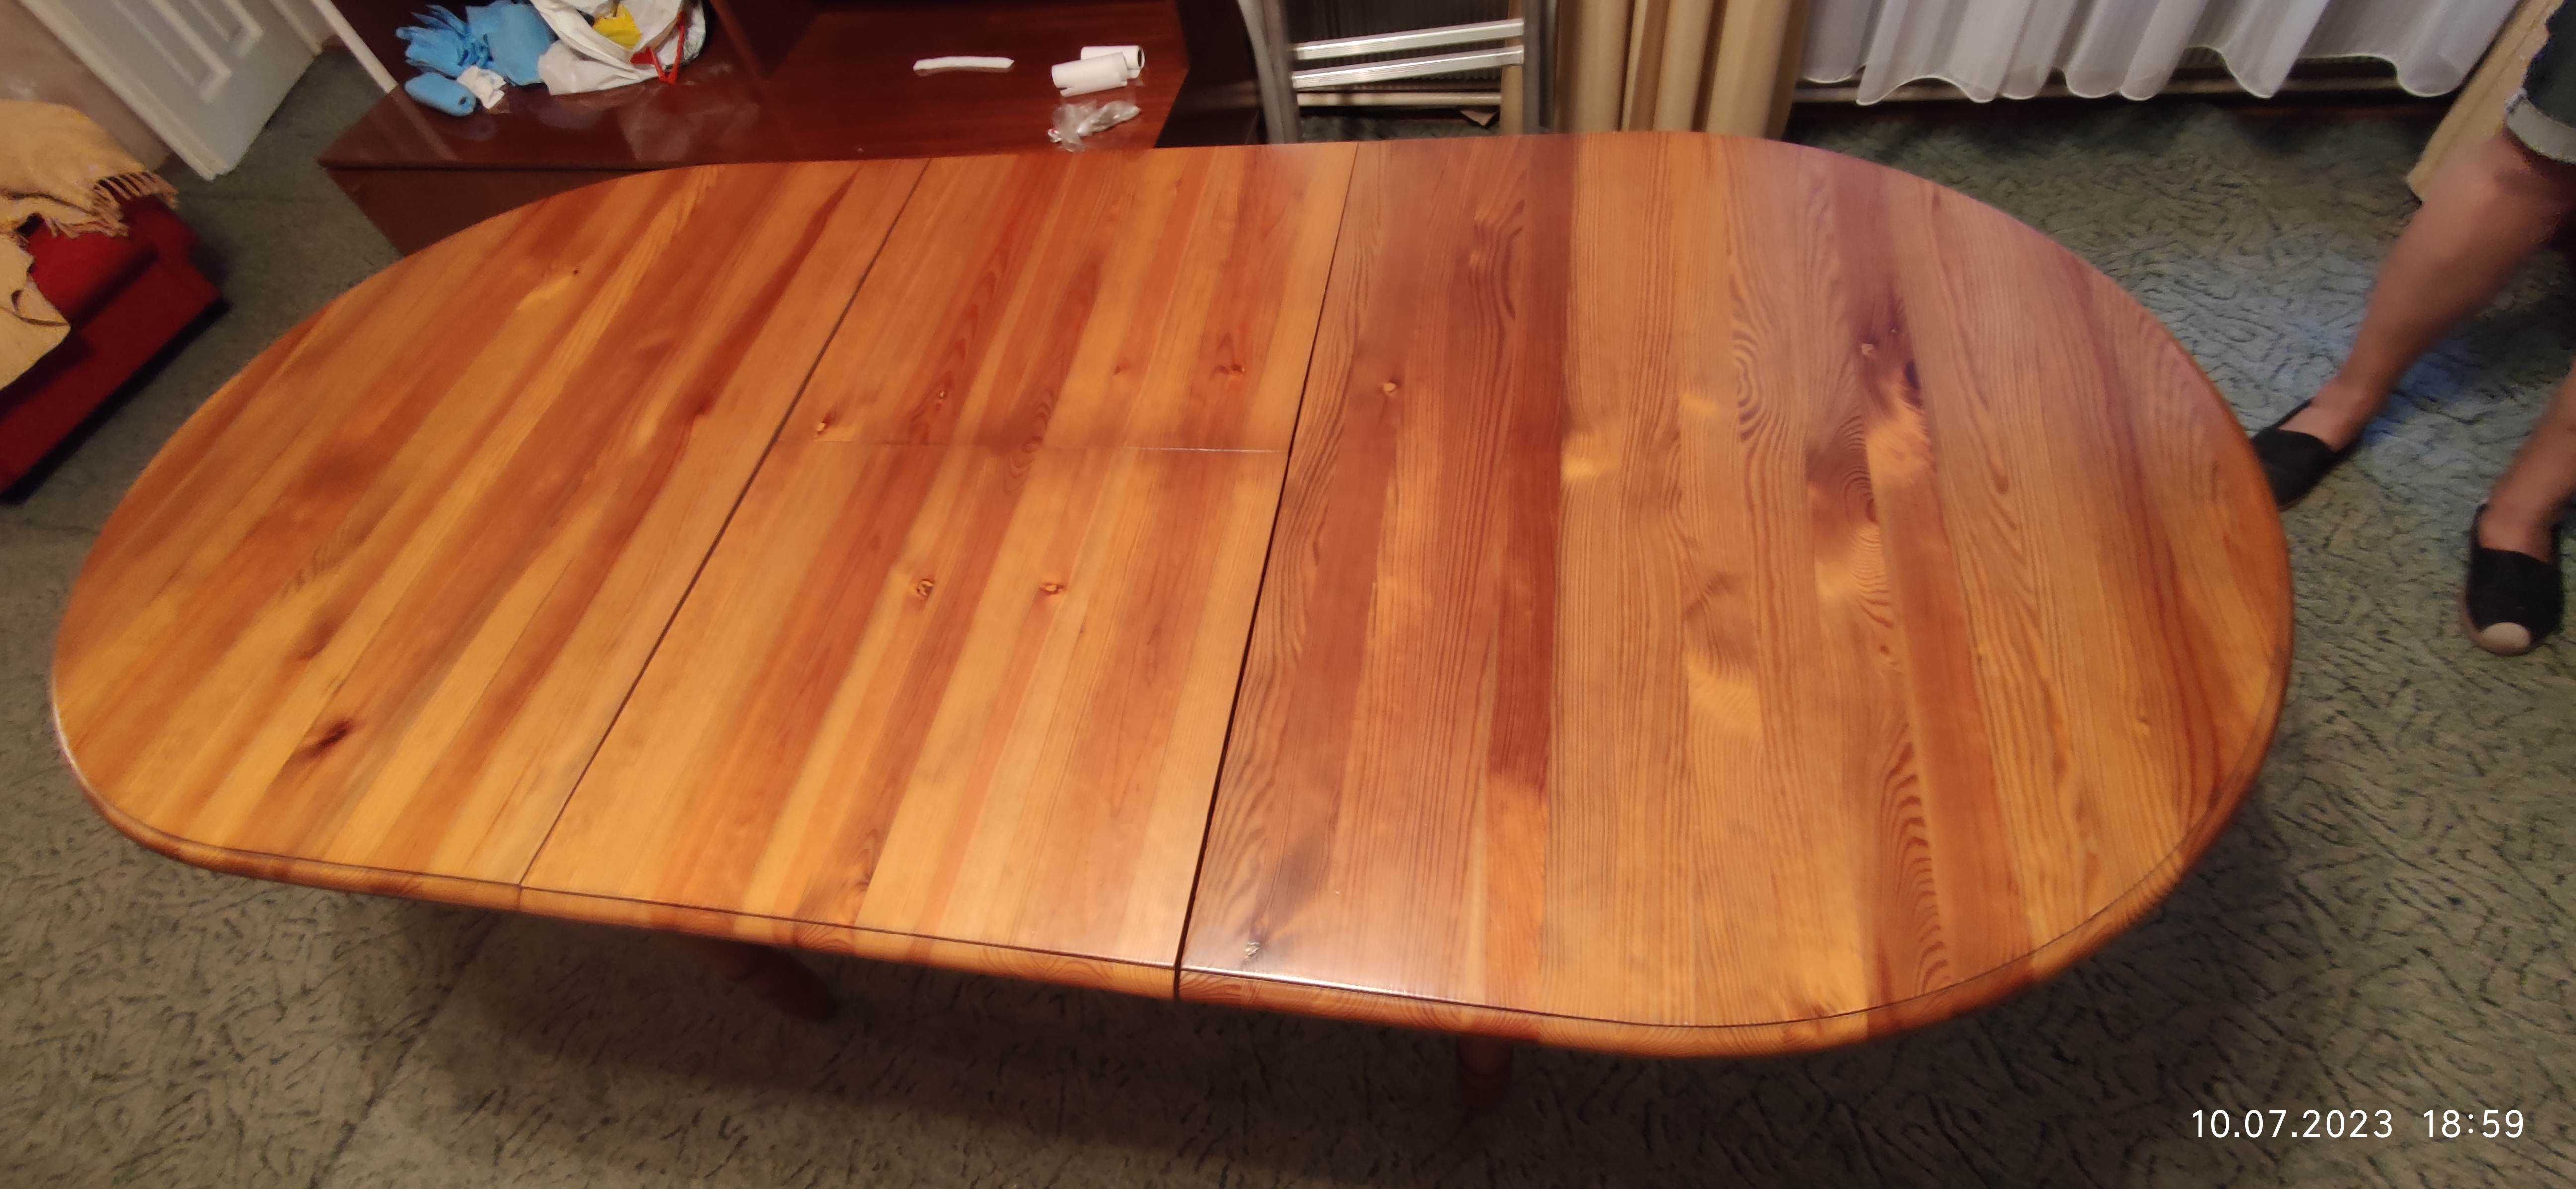 Stół drewniany mocny owalny elipsowaty rozkładany super stan